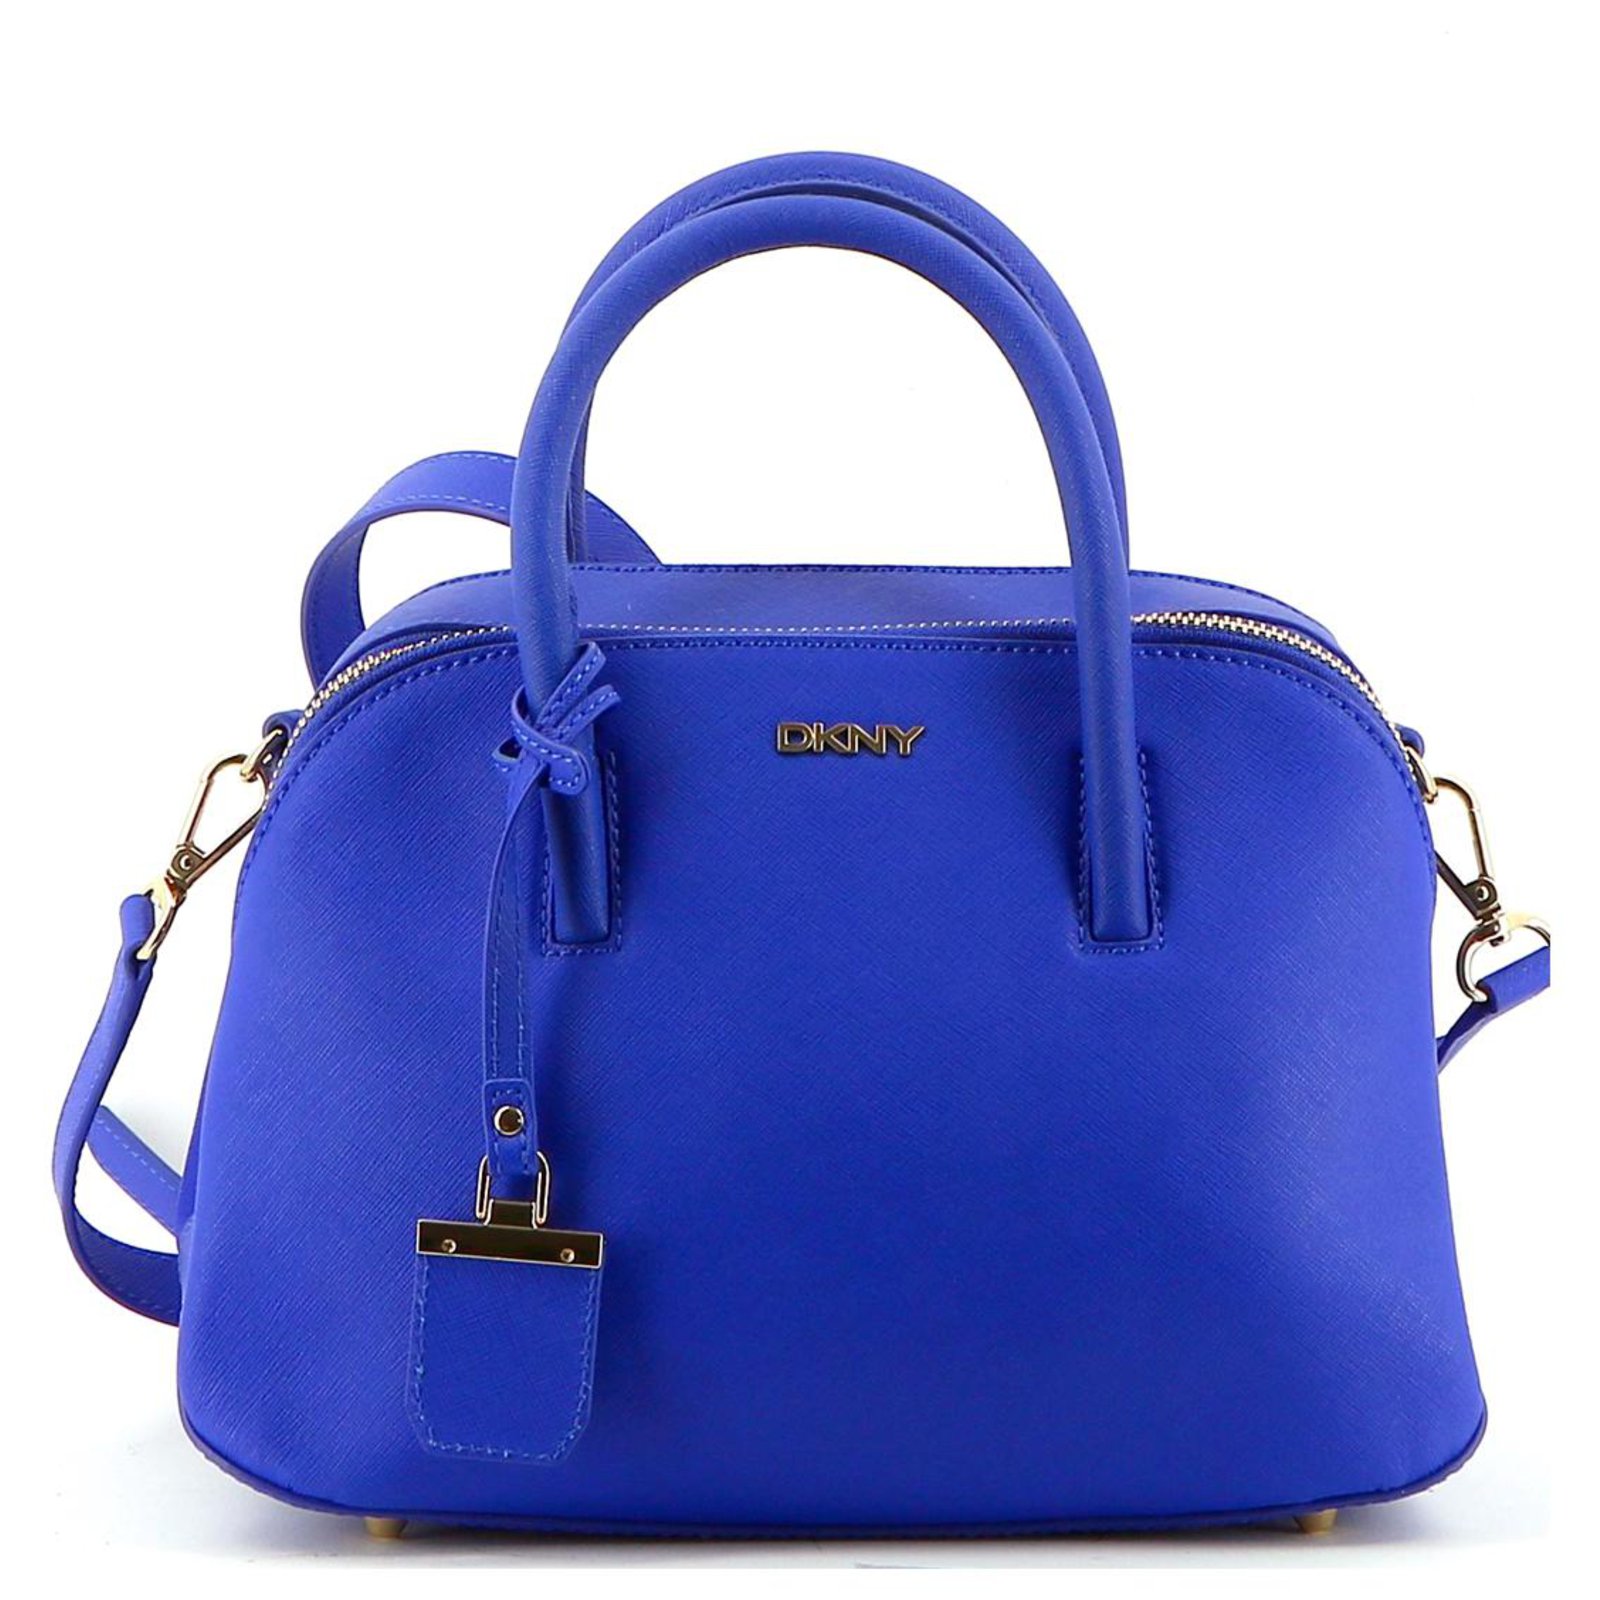 DKNY Blue Women's Handbag | eBay